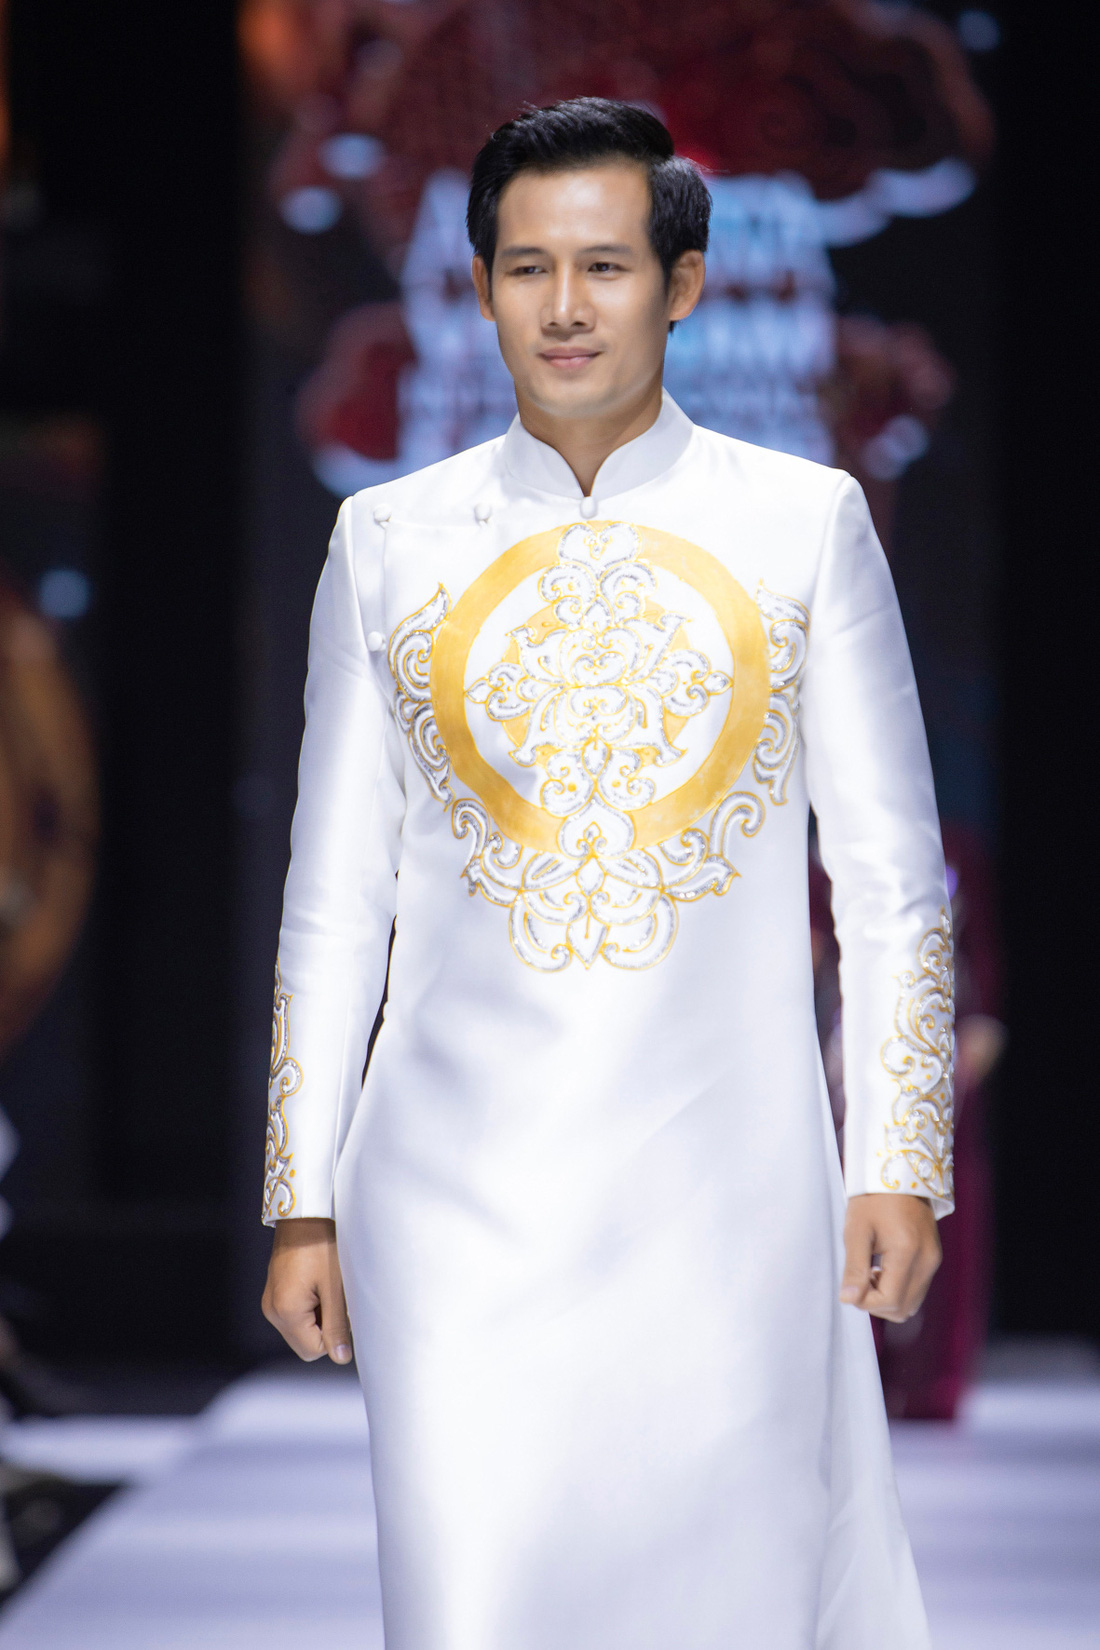 Hoa hậu Khánh Vân làm vedette, NSND Hồng Vân làm người mẫu catwalk cho nhà thiết kế Minh Châu - Ảnh 8.